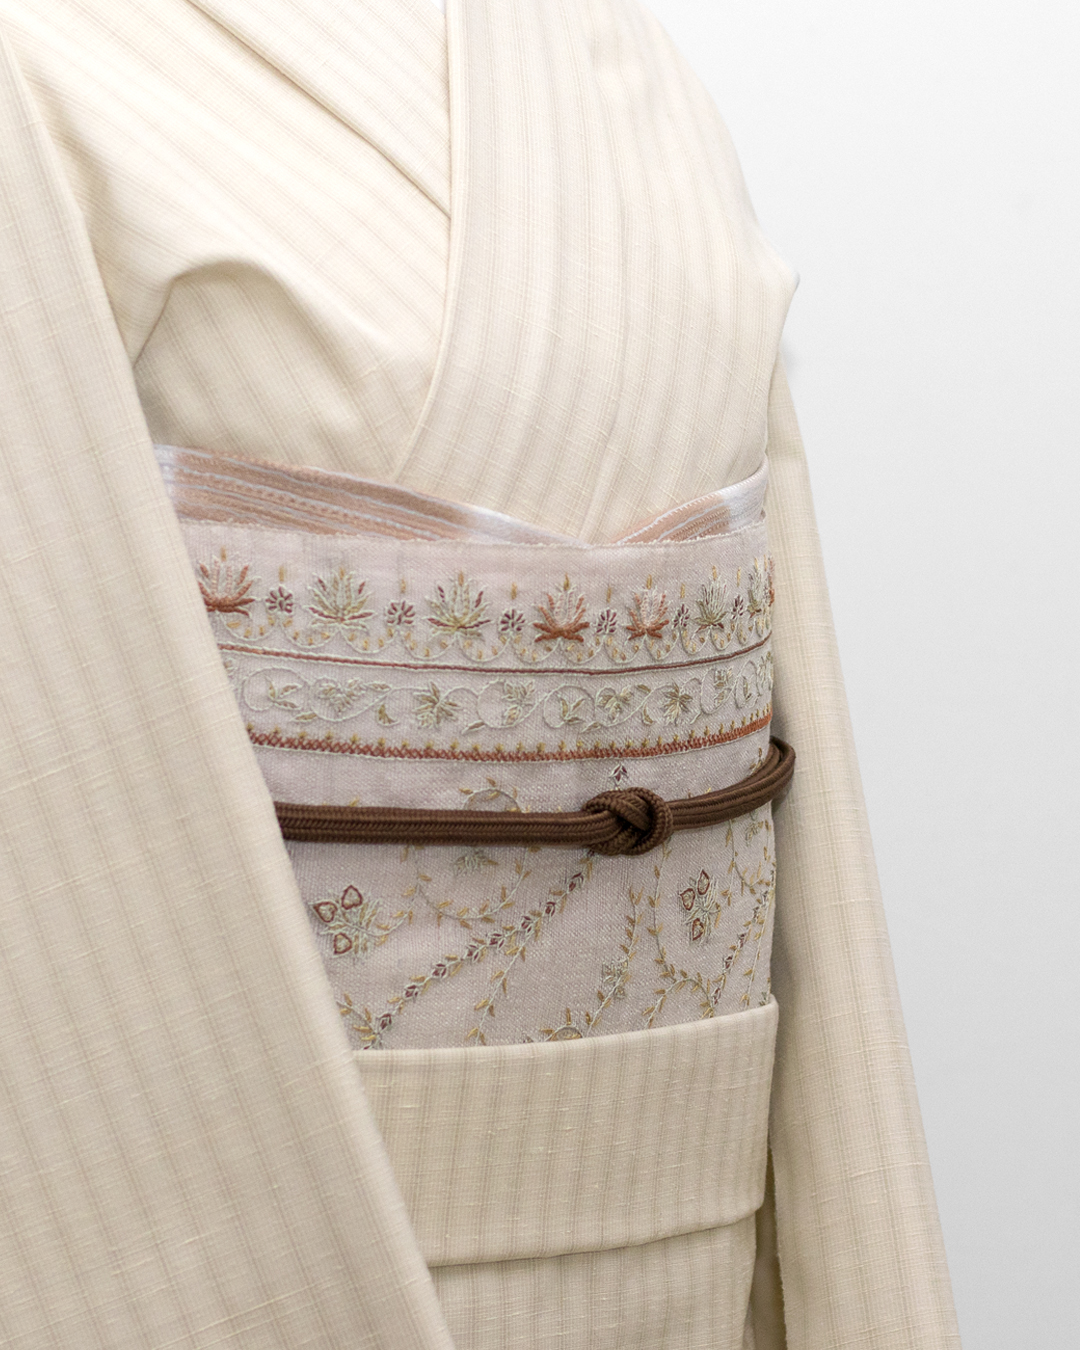 ベージュとベージュの組み合わせ。柳川千秋さんの風の組み立てと刺繍の帯のコーディネート